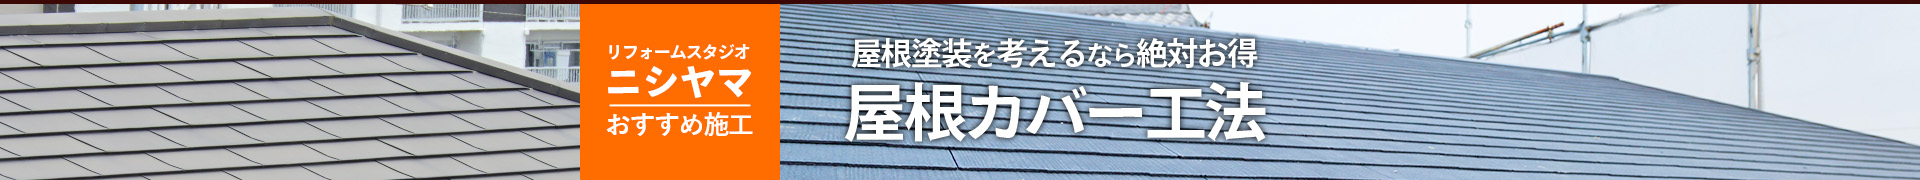 リフォームスタジオニシヤマおすすめ施工屋根塗装を考えるなら絶対お得屋根カバー工法